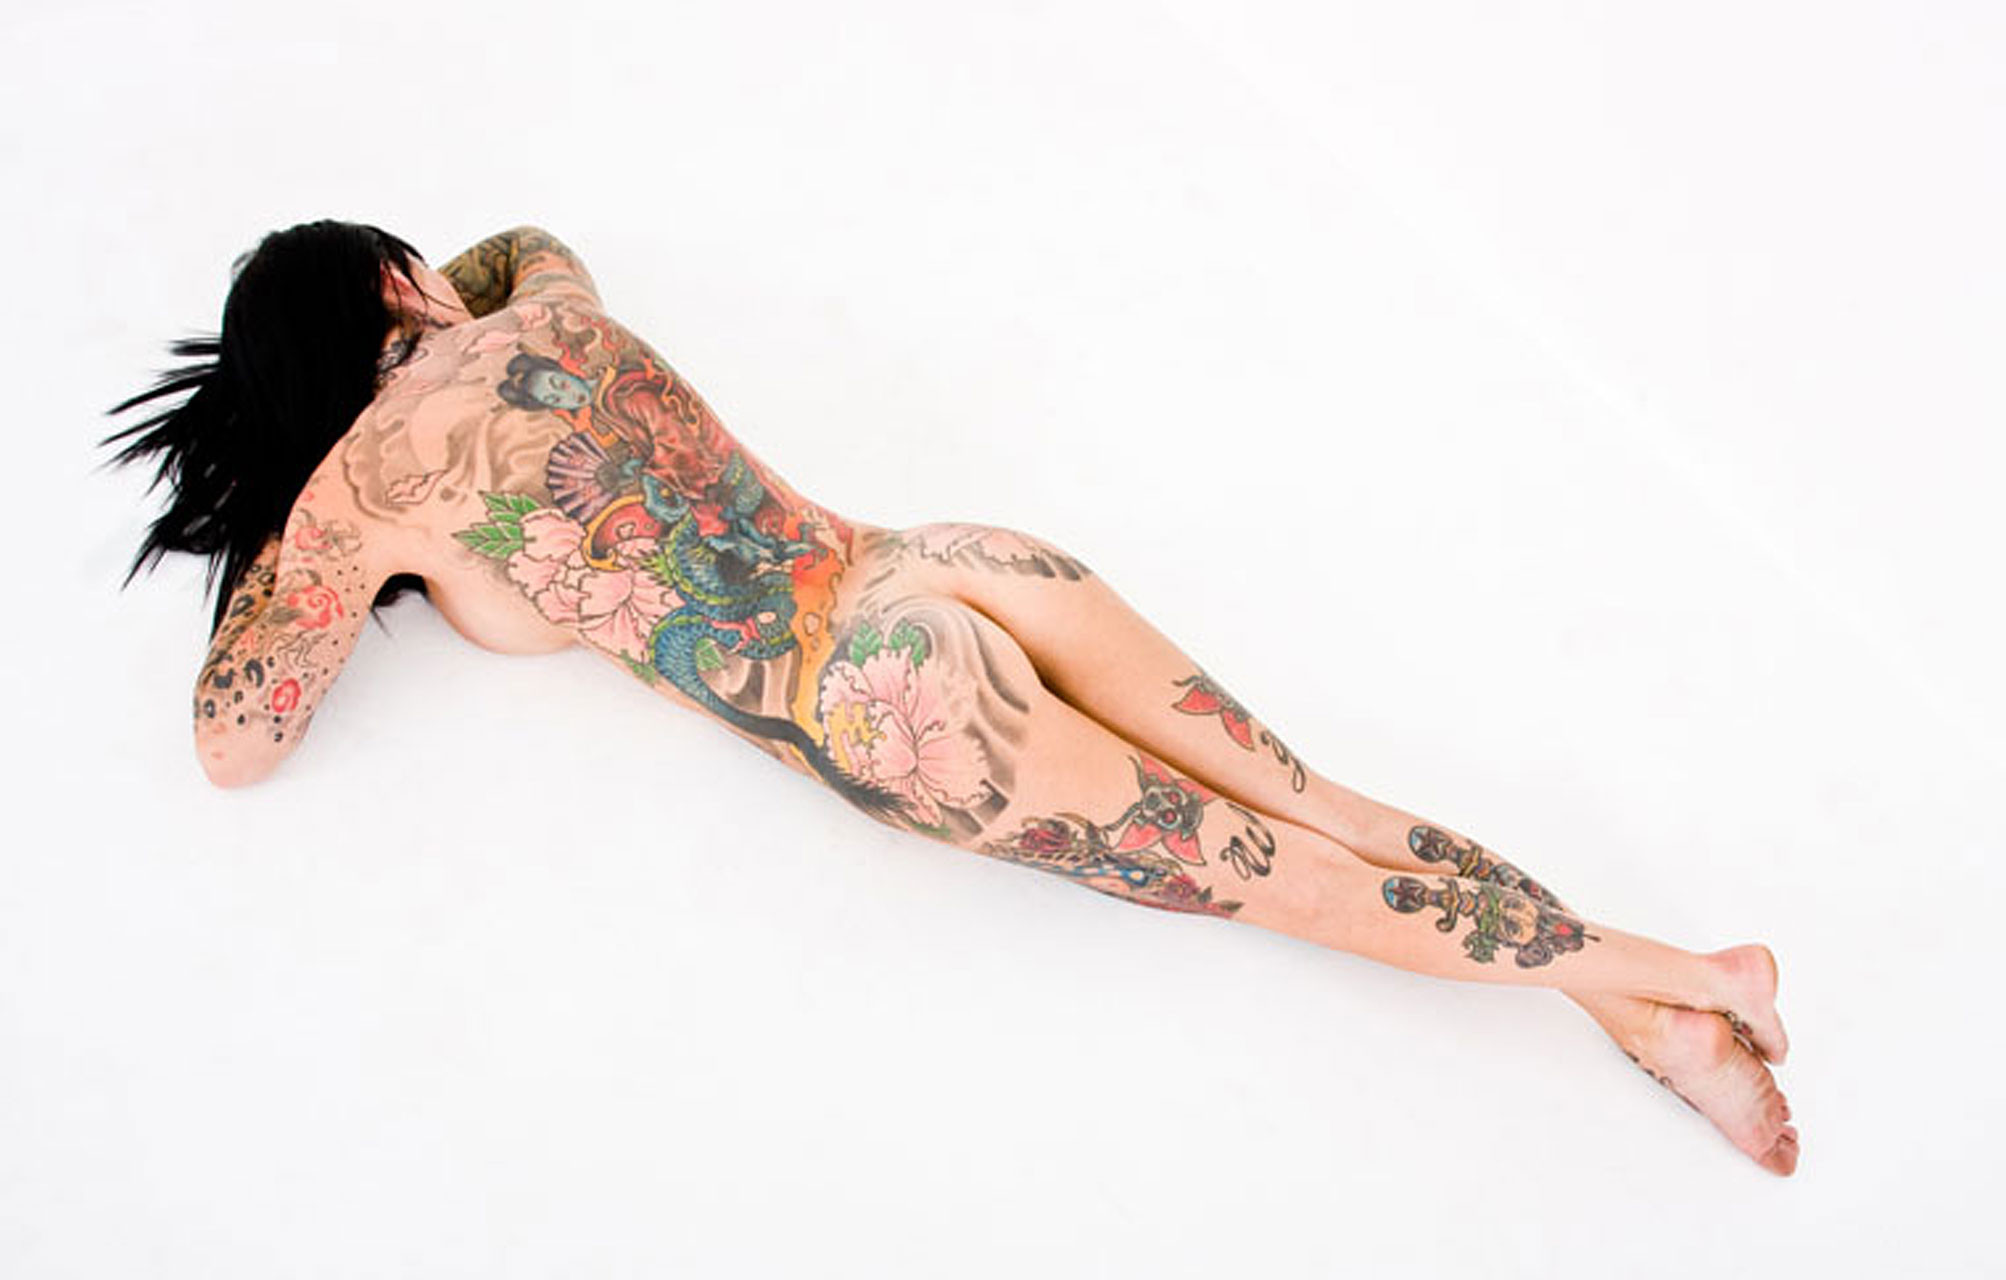 Michelle bombshell zeigt ihren nackten Körper und ihre Tattoos
 #75355698